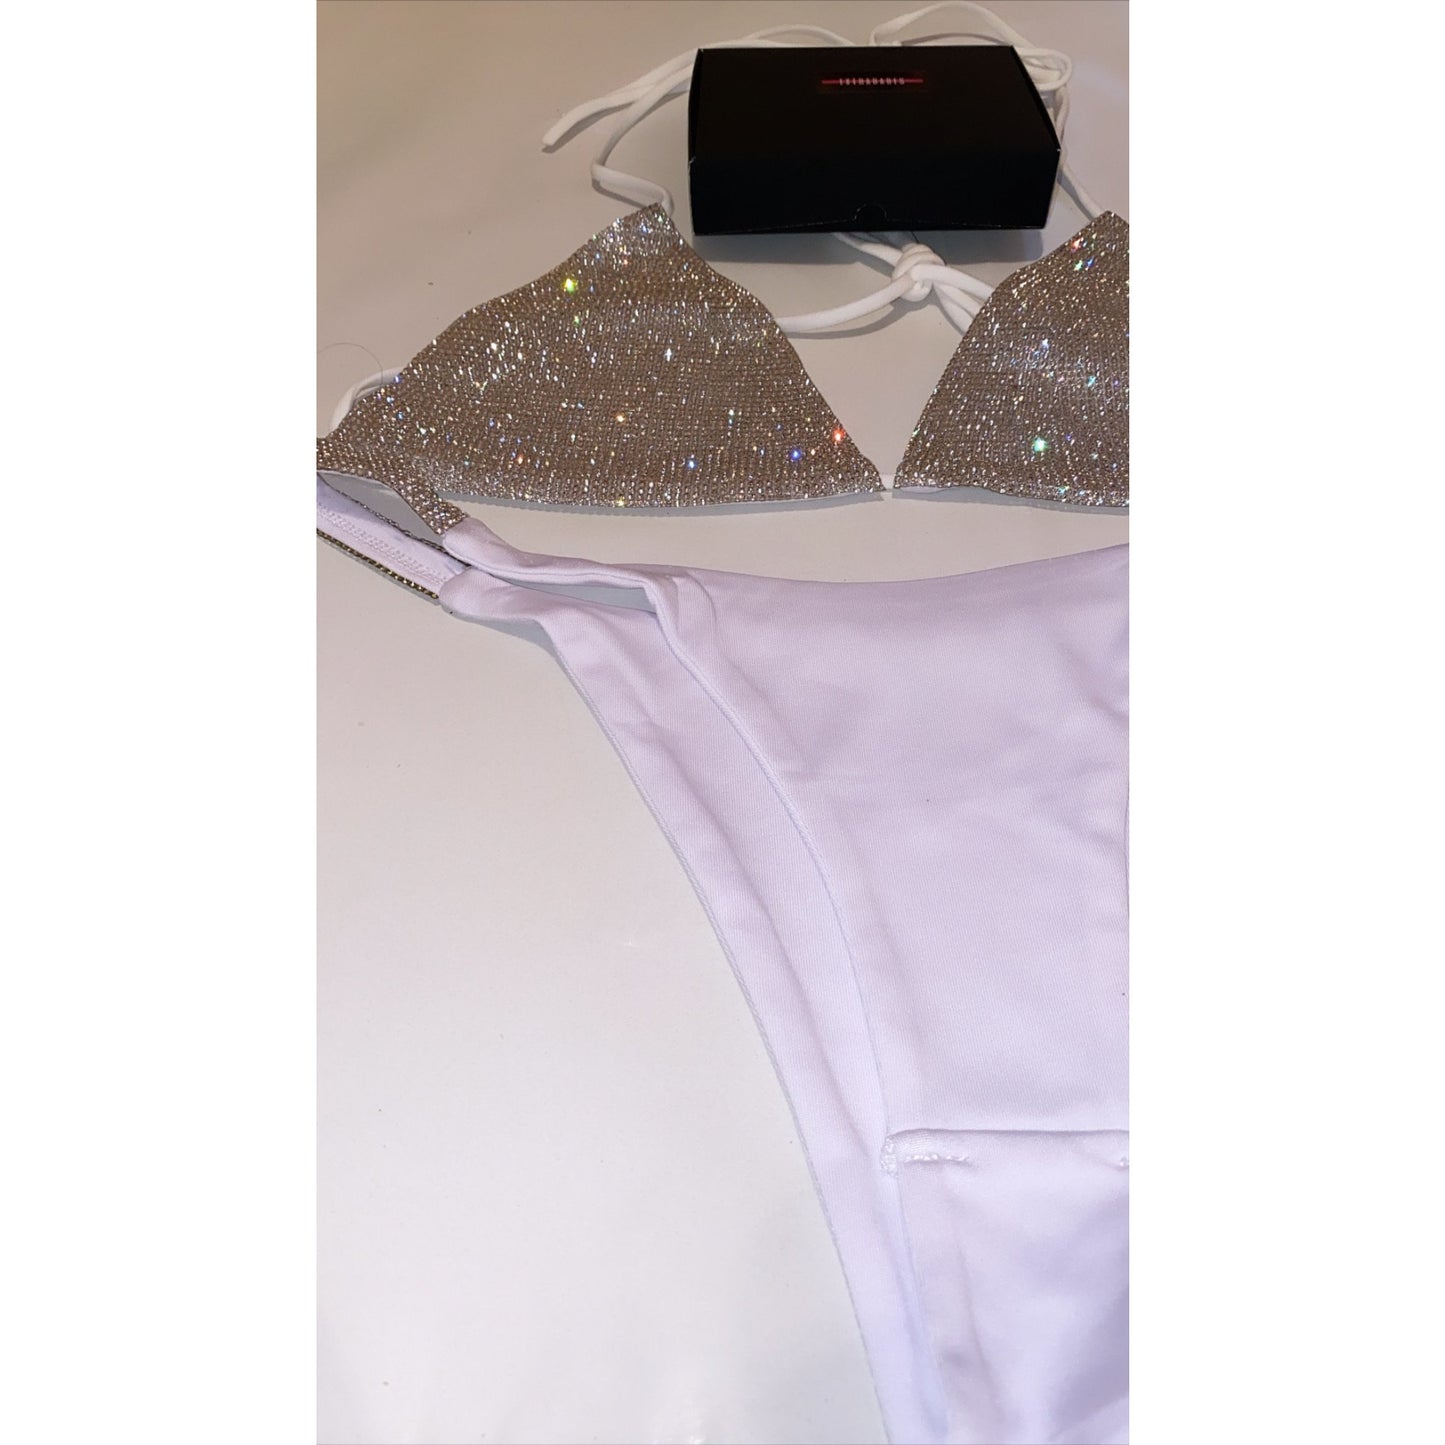 COSTUM DE BAIE 'WHITE DIAMOND' - Costum de baie alb din doua piese cu aplicatii tip stras pe sutienul tip triunghi, si bikini stilul brazilian